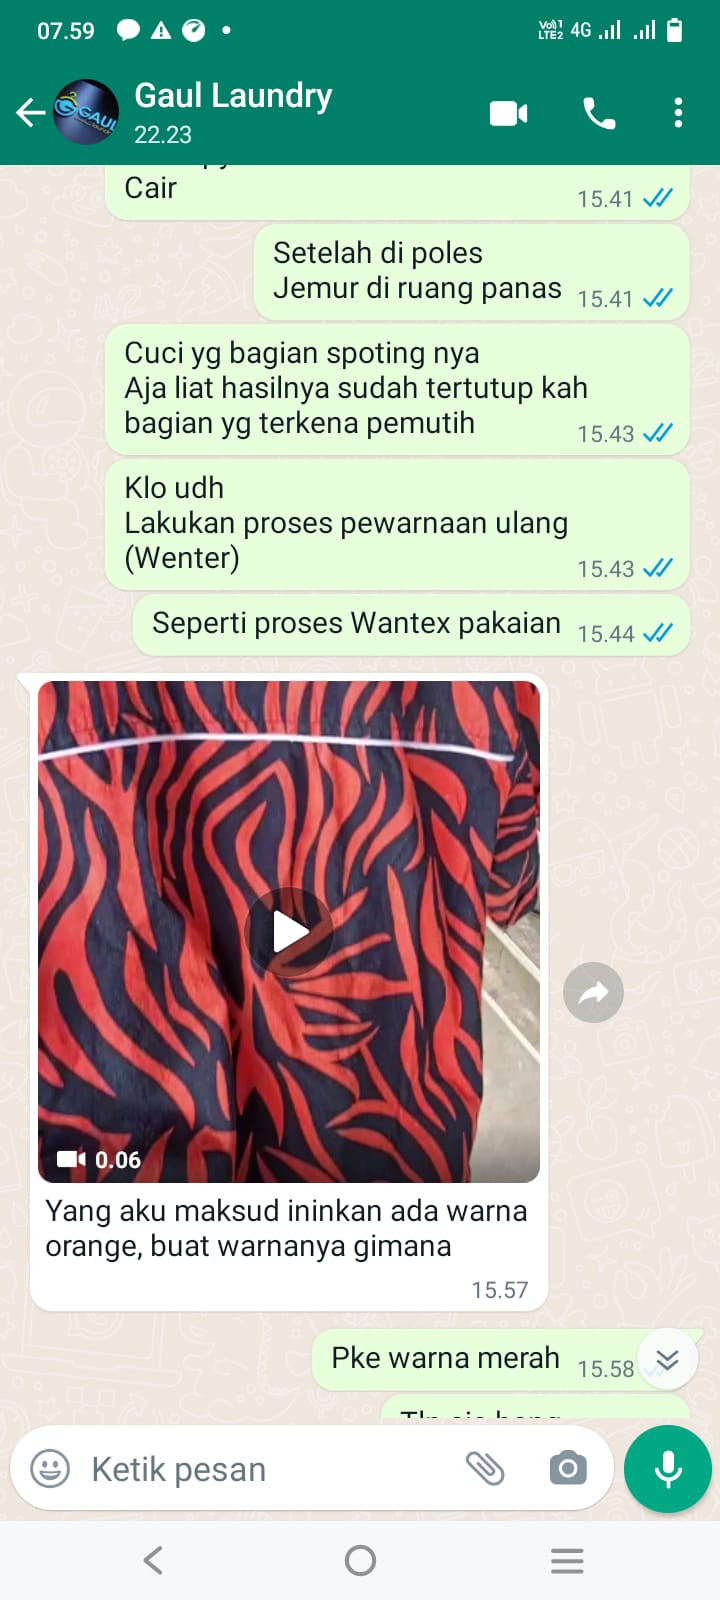 Harga Wantex Pakaian Kembali Seperti Baru Banda Aceh